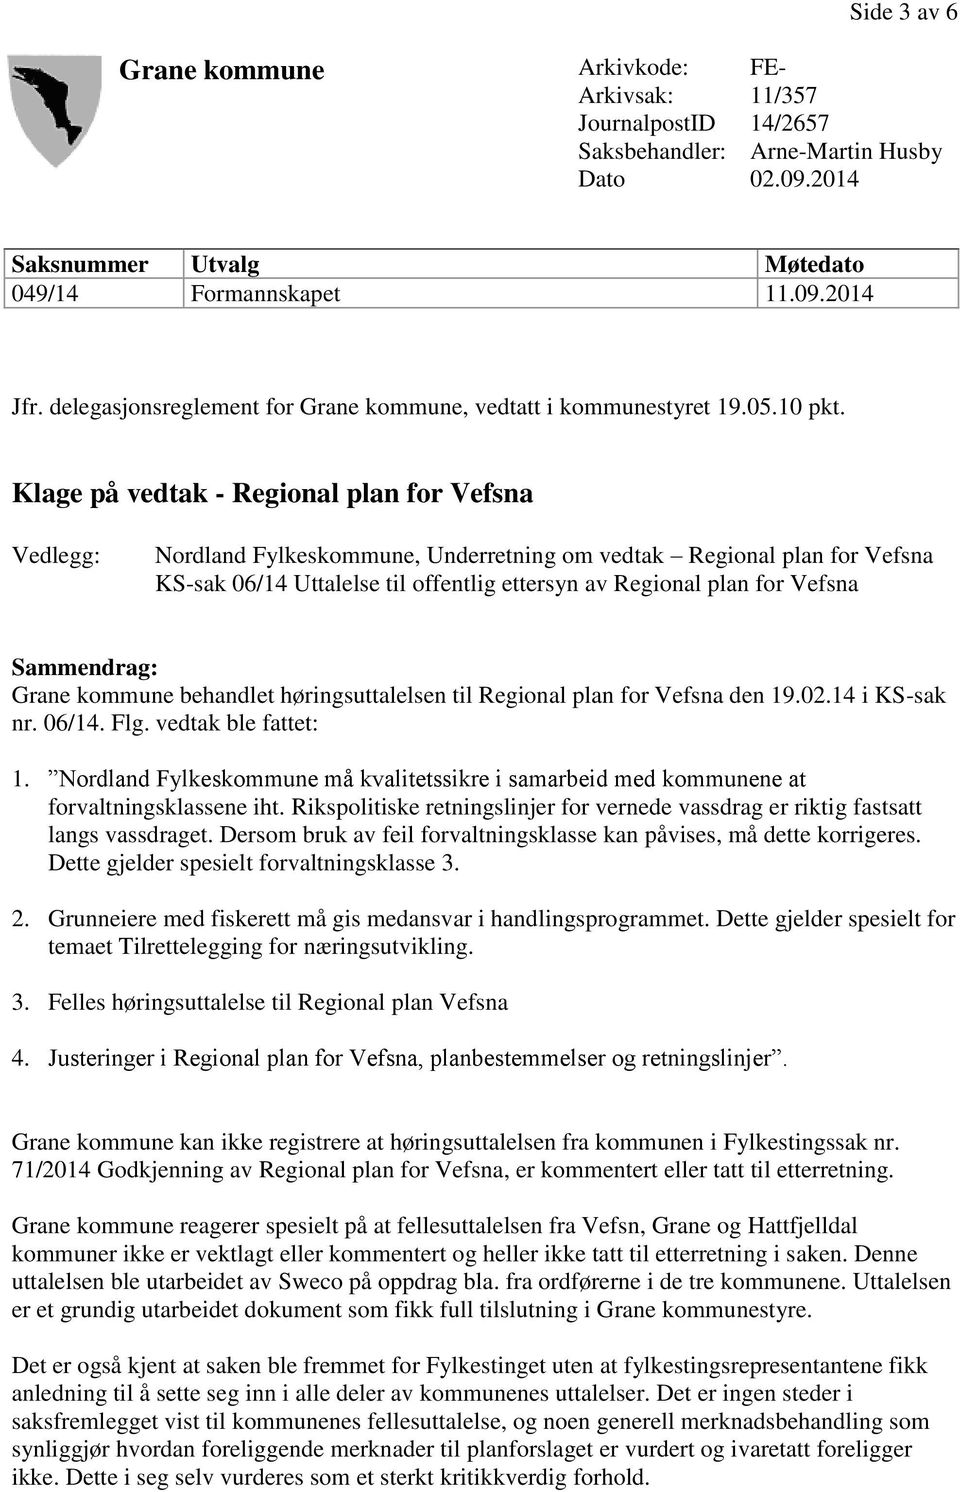 Klage på vedtak - Regional plan for Vefsna Vedlegg: Nordland Fylkeskommune, Underretning om vedtak Regional plan for Vefsna KS-sak 06/14 Uttalelse til offentlig ettersyn av Regional plan for Vefsna